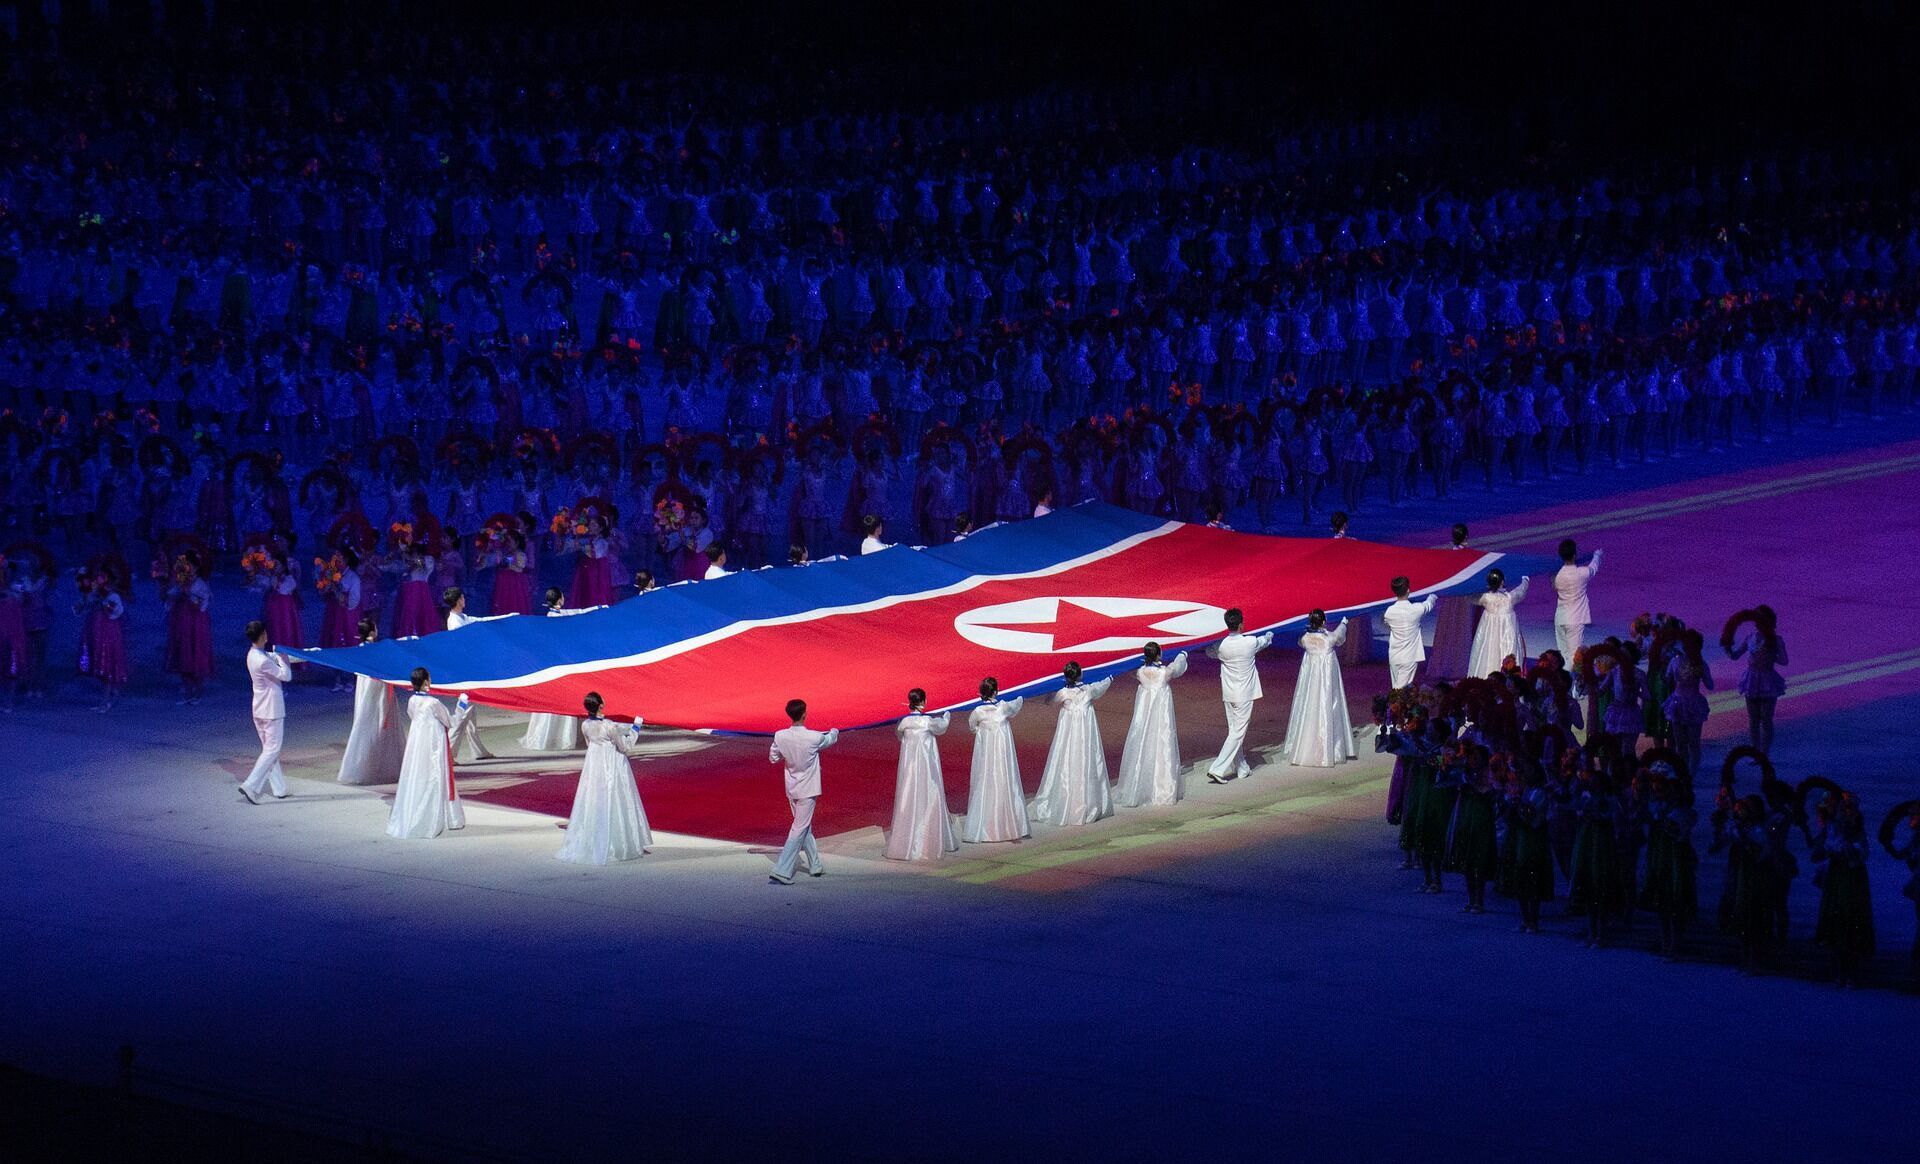 Північна Корея має власний режим, який формується на тоталітарній ідеології.